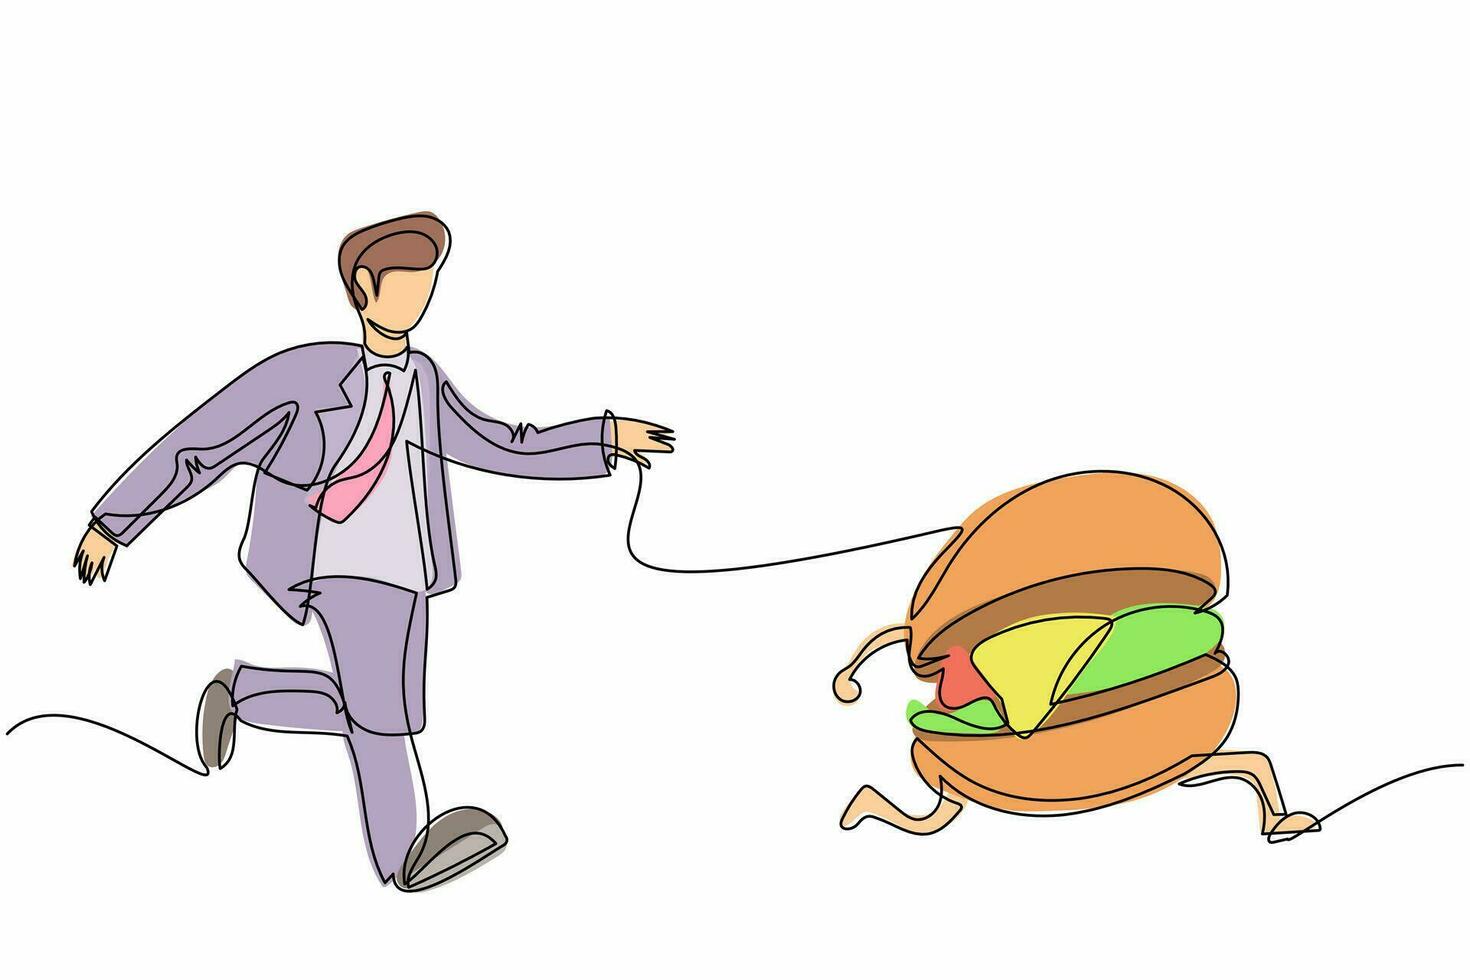 Single Continuous Line Drawing Geschäftsmann läuft hinterher und versucht, leckere Fast-Food-Hamburger zu fangen. Junk Food, ungesund, Übergewicht, Fettleibigkeit. Geschäftsmetapher. eine Linie zeichnen Design-Vektor-Illustration vektor